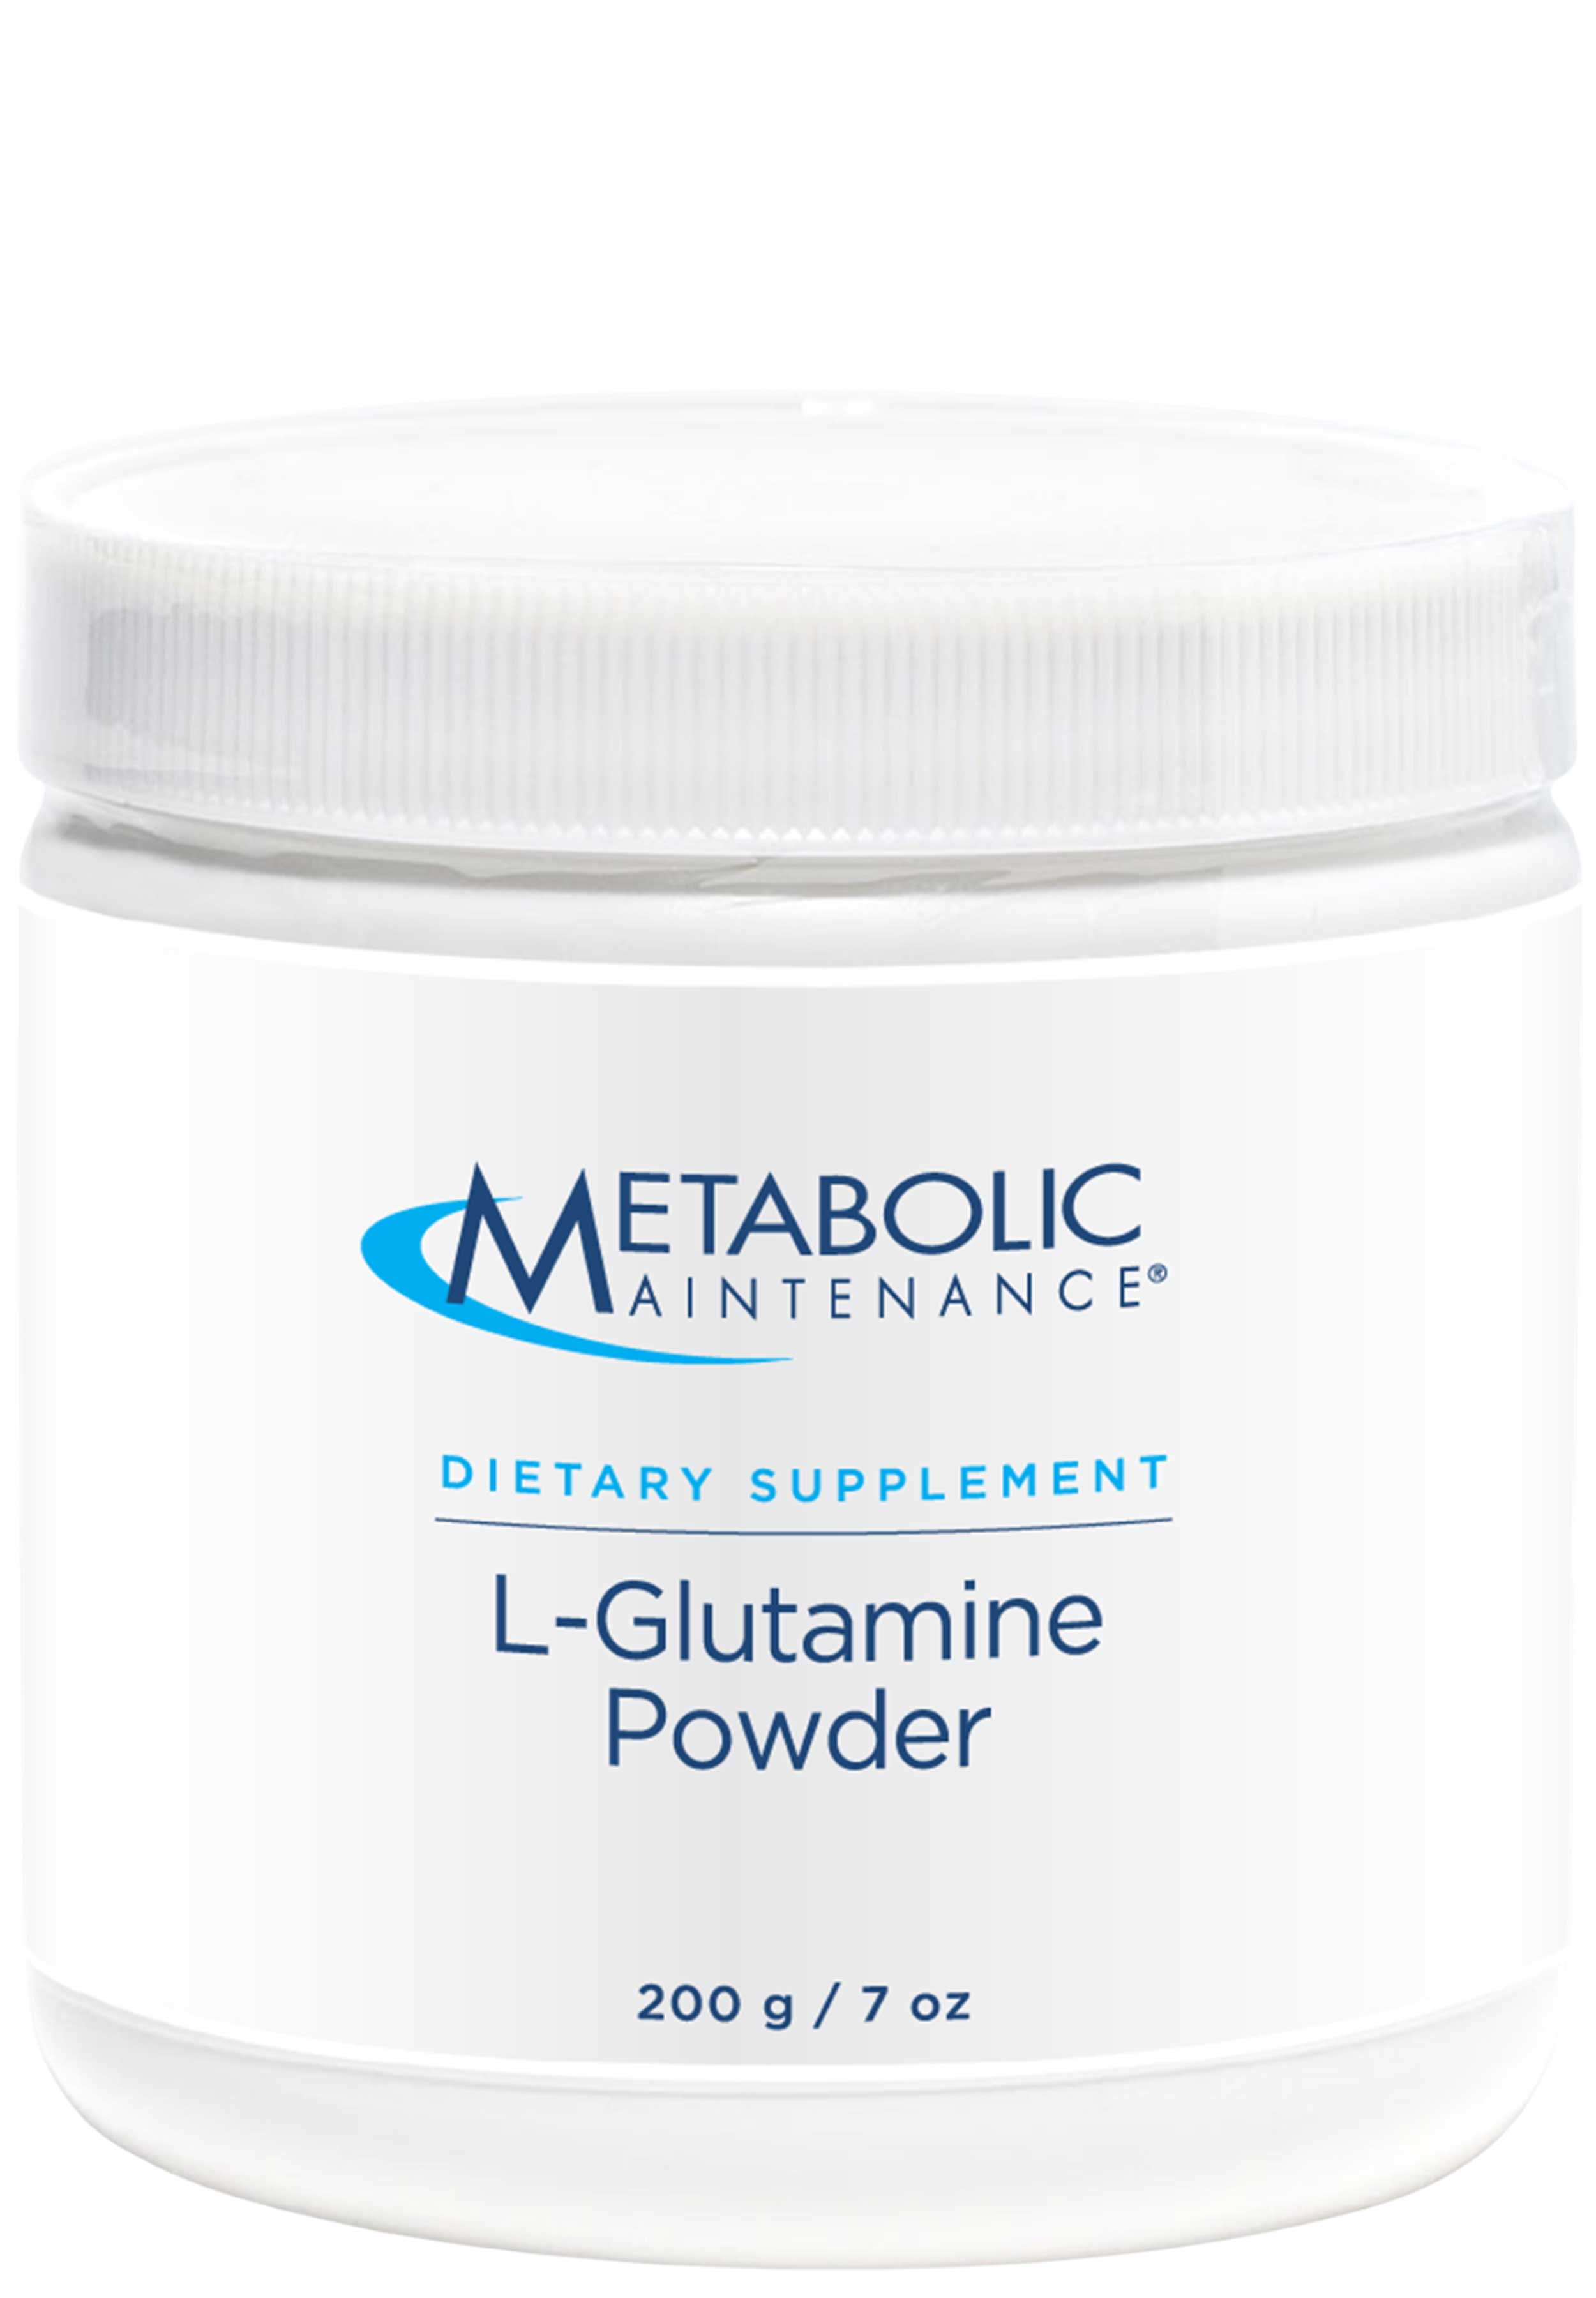 Metabolic Maintenance L-Glutamine Powder